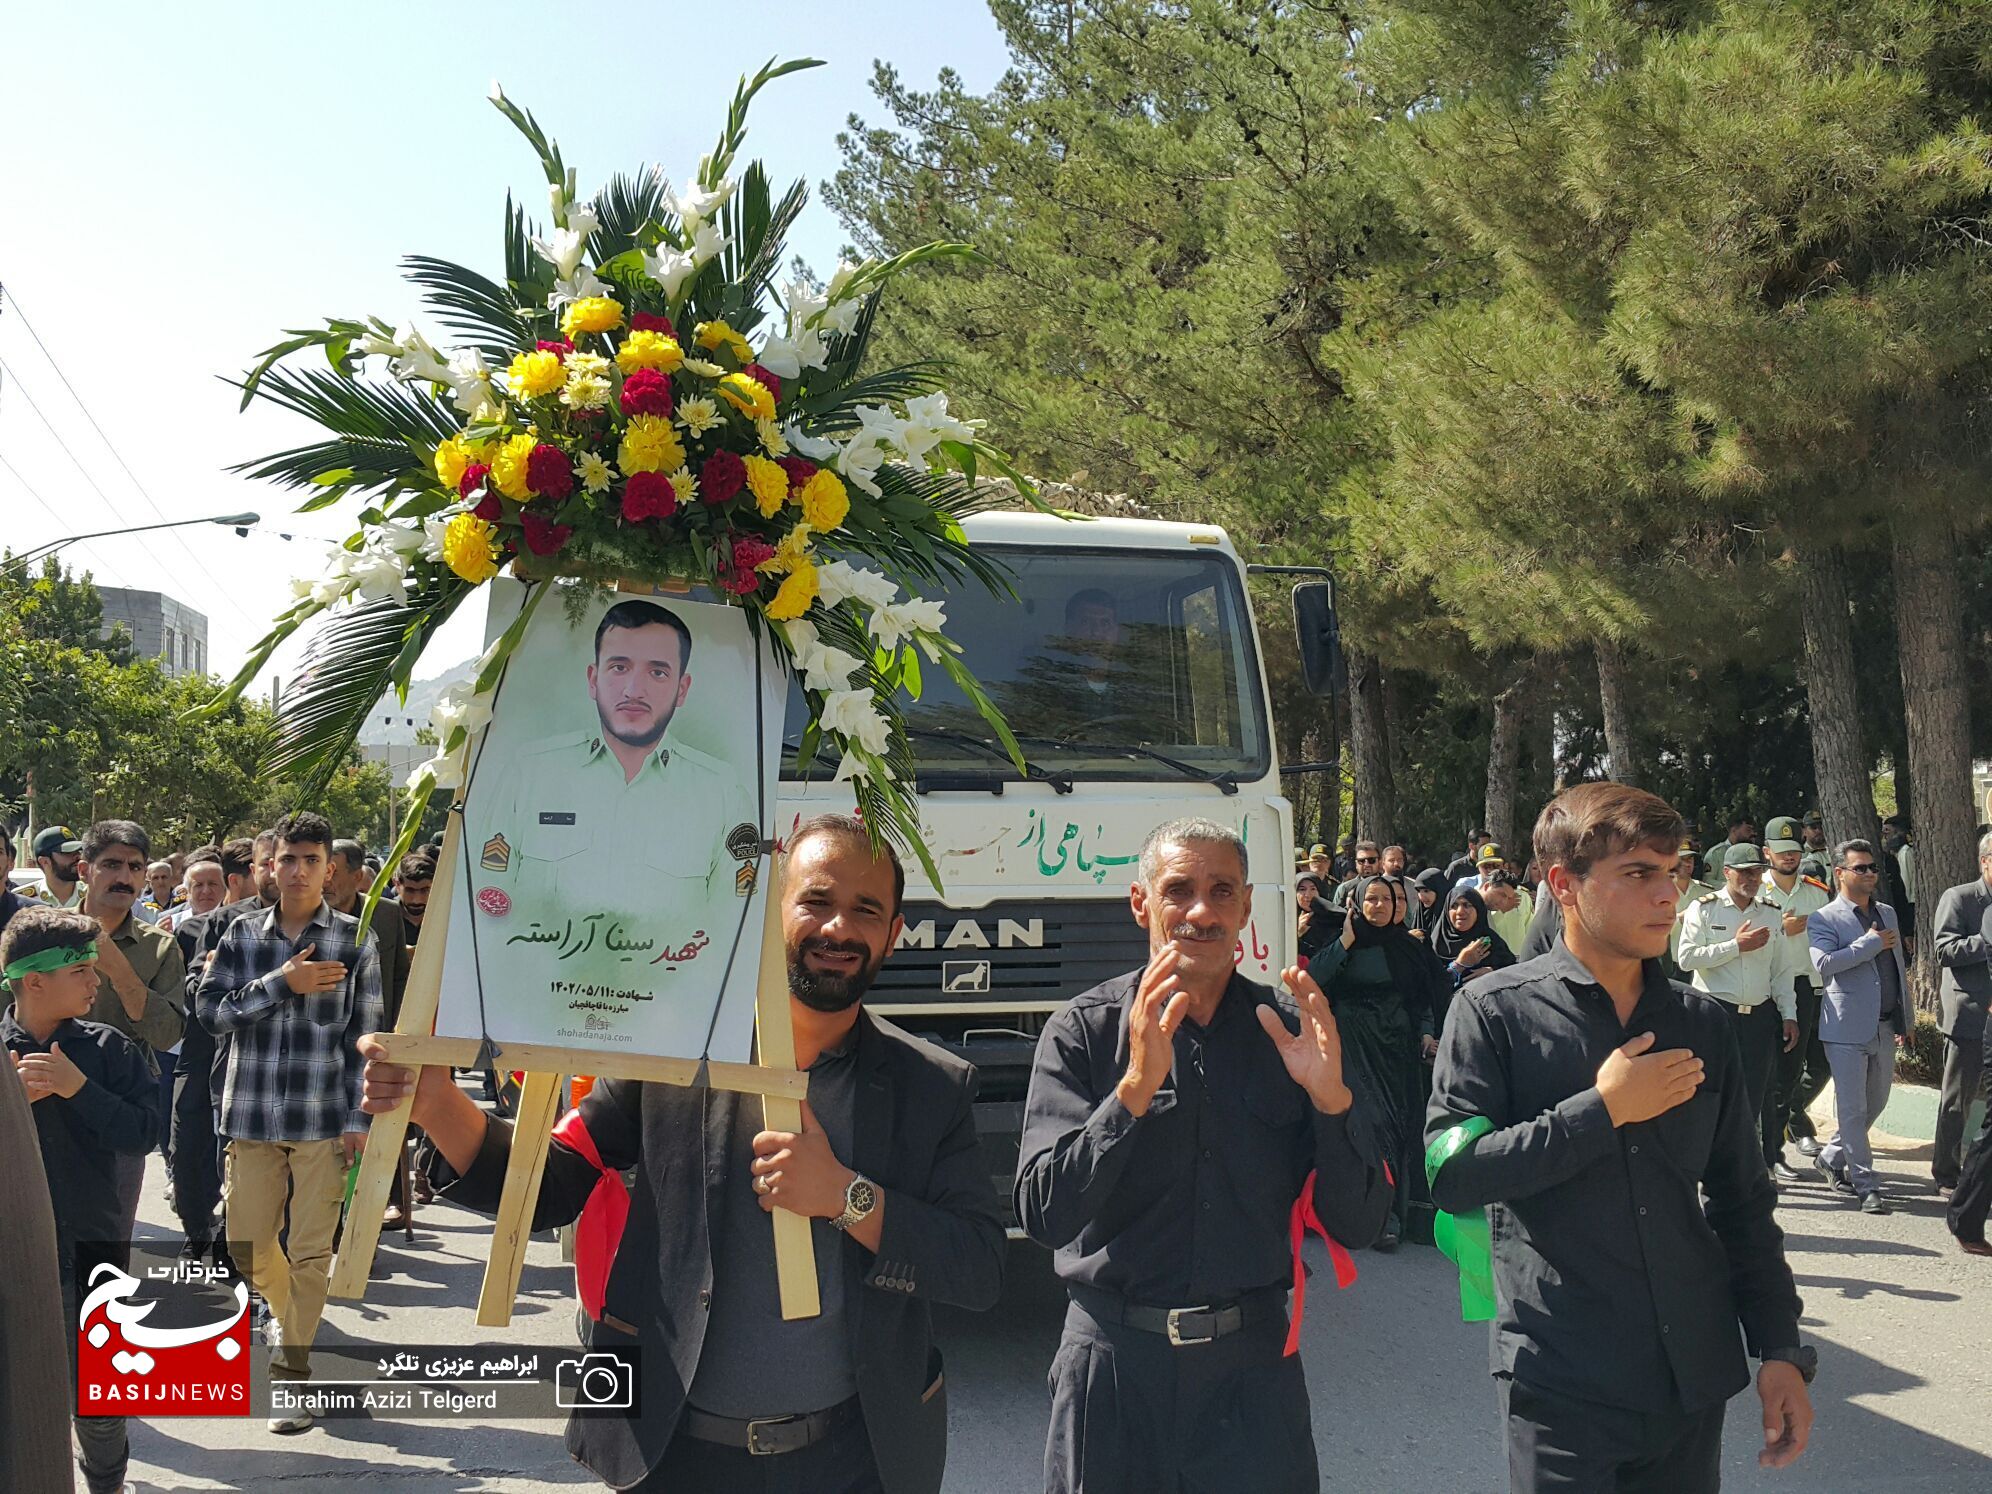 مراسم تشییع باشکوه شهید مدافع امنیت در یاسوج از دریچه دوربین خبرنگار بسیج + ( تصاویر )